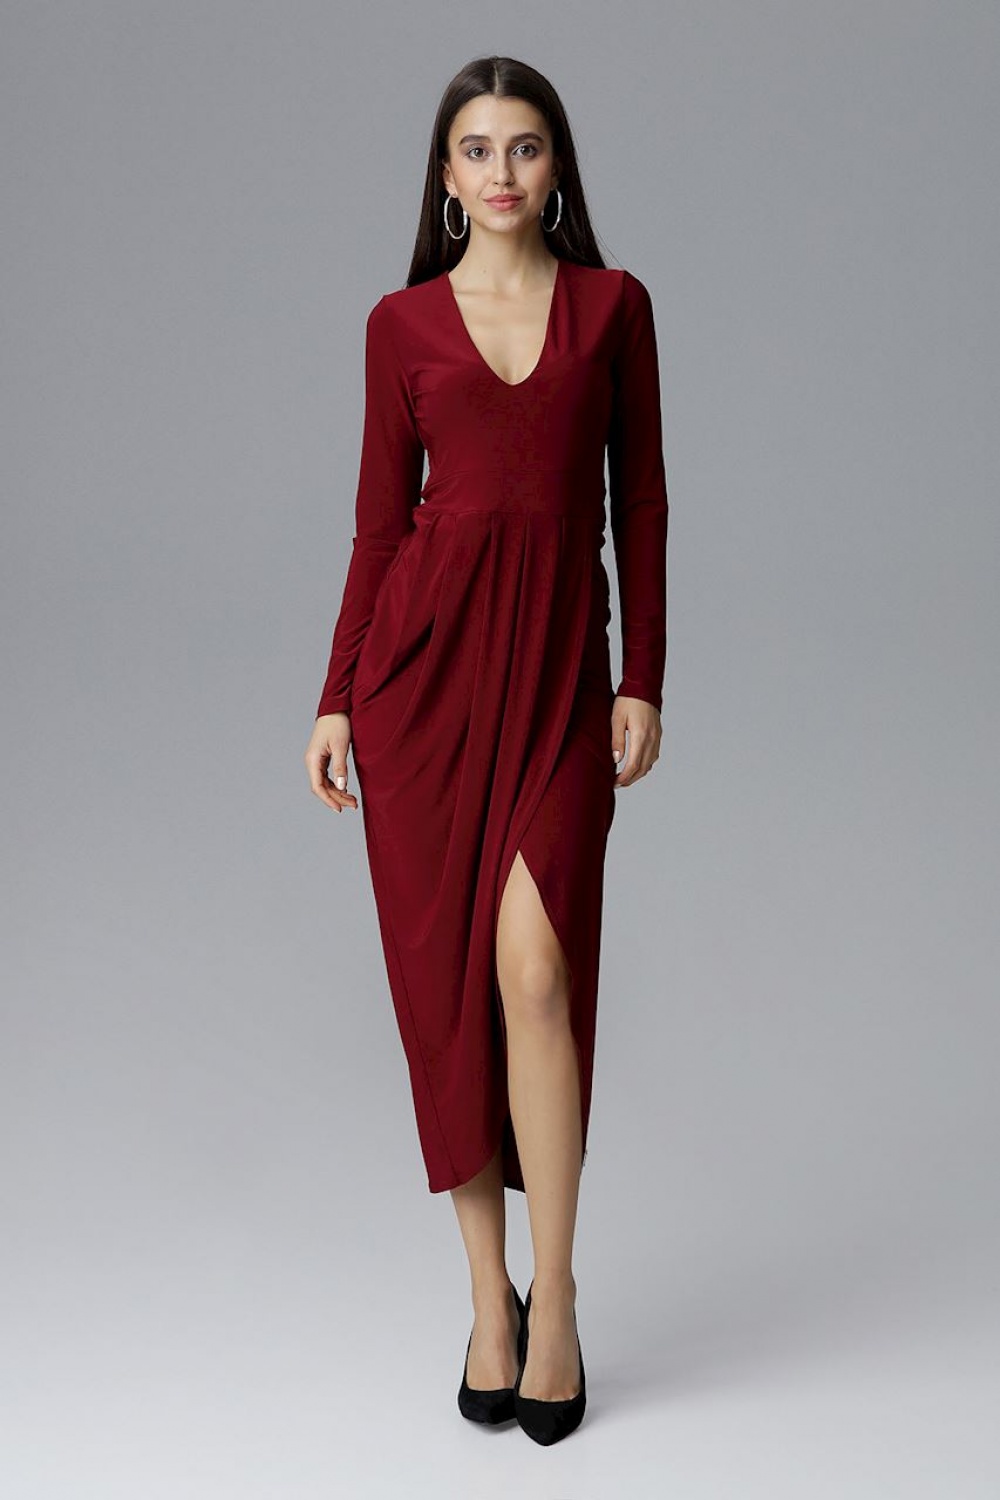 Langes Kleid model 126215 Figl rot Damen